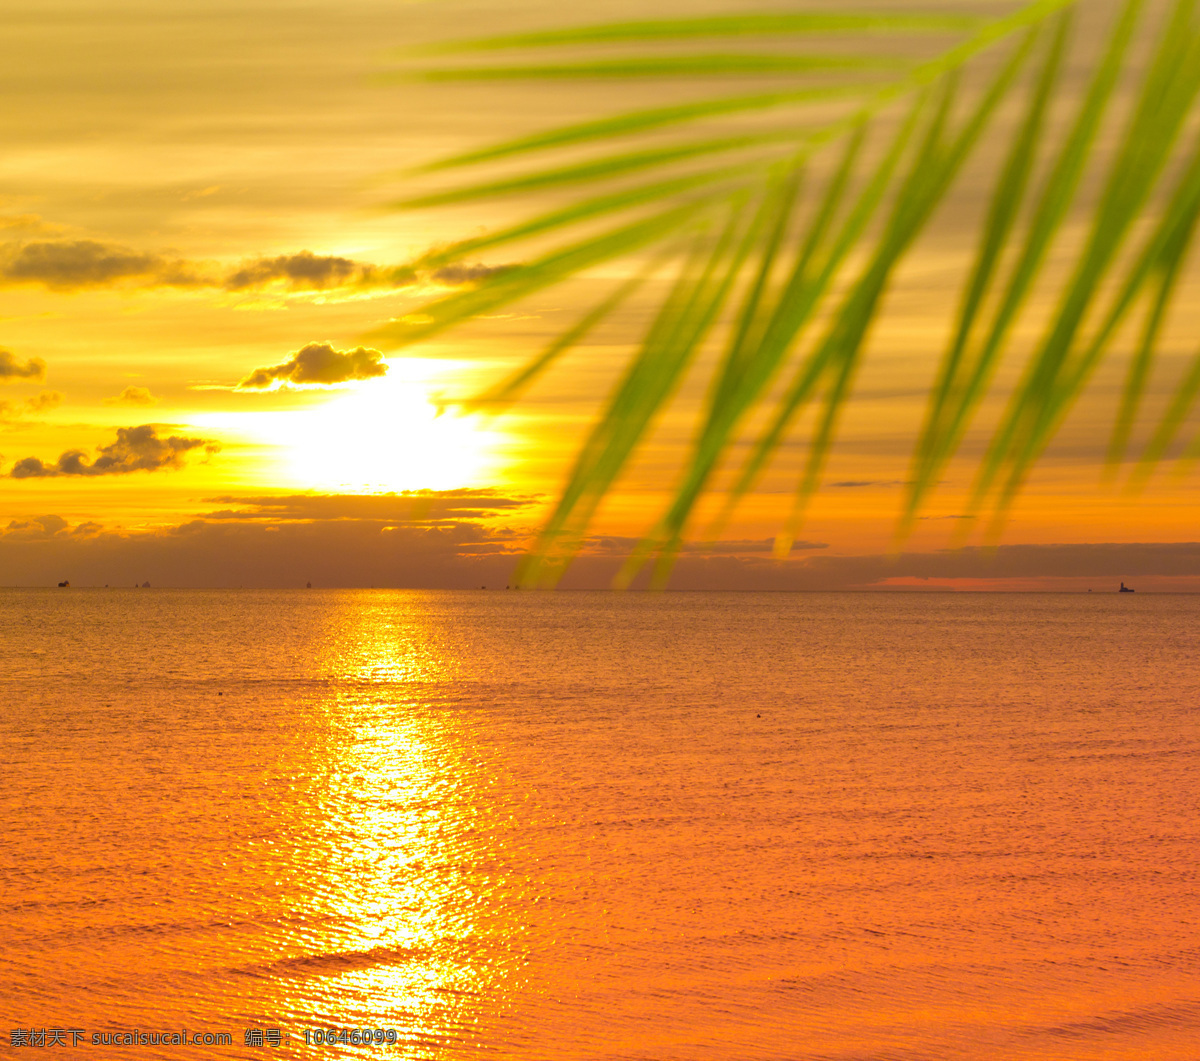 大海 风景 大海风景 高清图片 摄影图片 jpg图片 椰树 黄昏景色 自然风景 黄昏 平静的海面 大海图片 风景图片